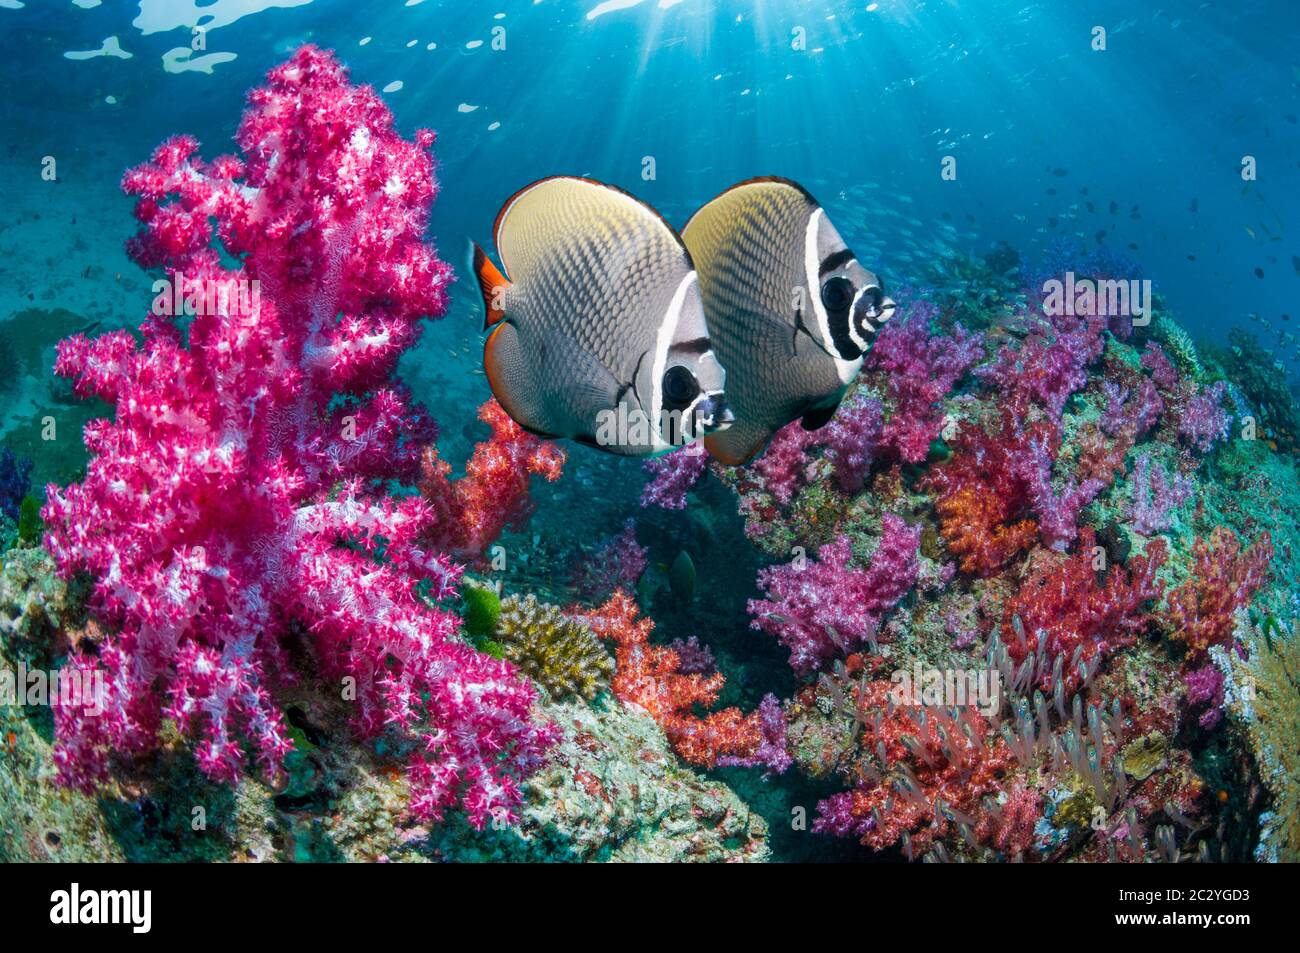 Redtail butterflyfish [Chaetodon collare] nuotare accanto ai coralli molli sulla barriera corallina. Mare delle Andamane, Thailandia. Foto Stock